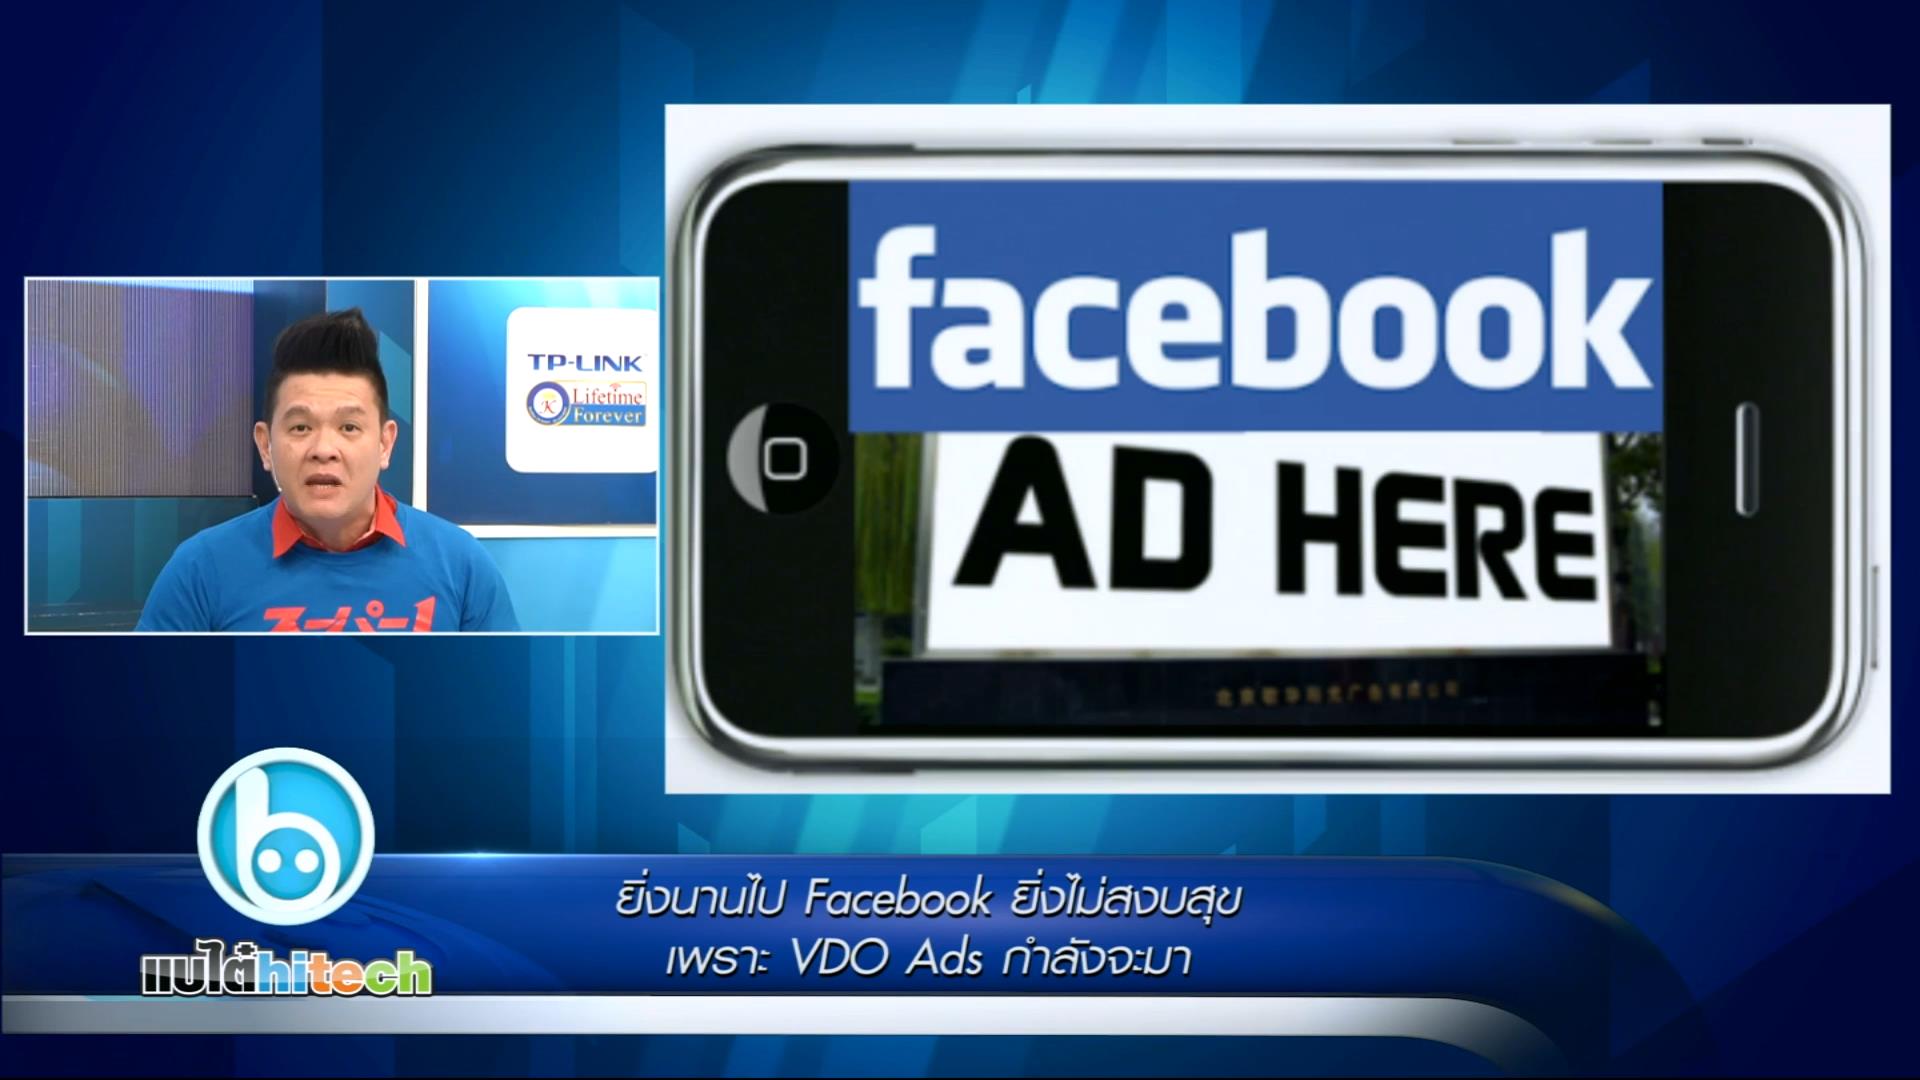 ยิ่งนานไป Facebook ยิ่งไม่สงบสุข เพราะ VDO Ads กำลังจะมา แต่ Twitter ยิ่งทำให้อยากอยู่ ด้วย